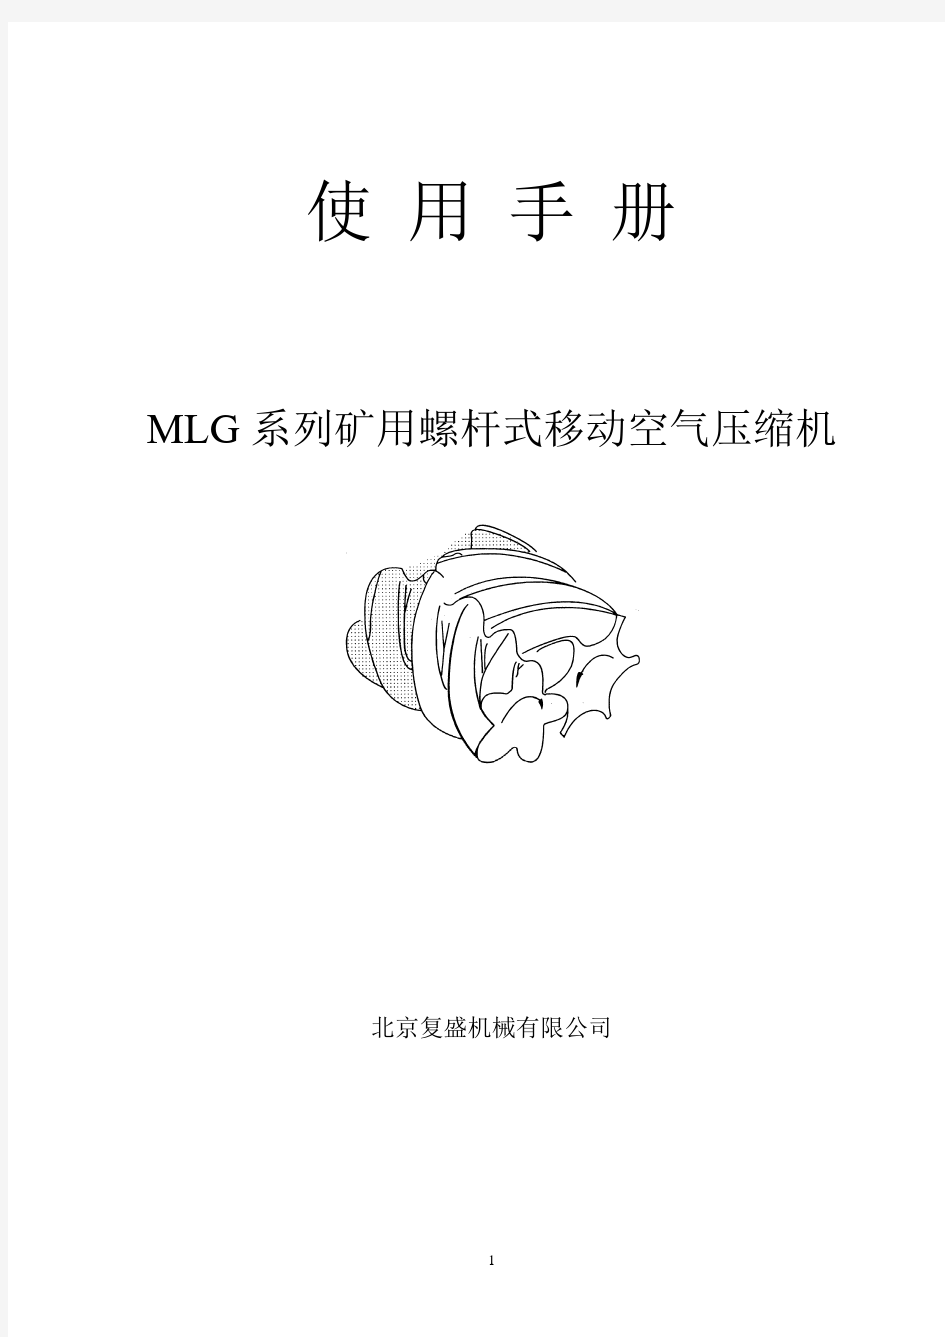 北京复盛MLG系列矿用螺杆式移动空气压缩机使用手册